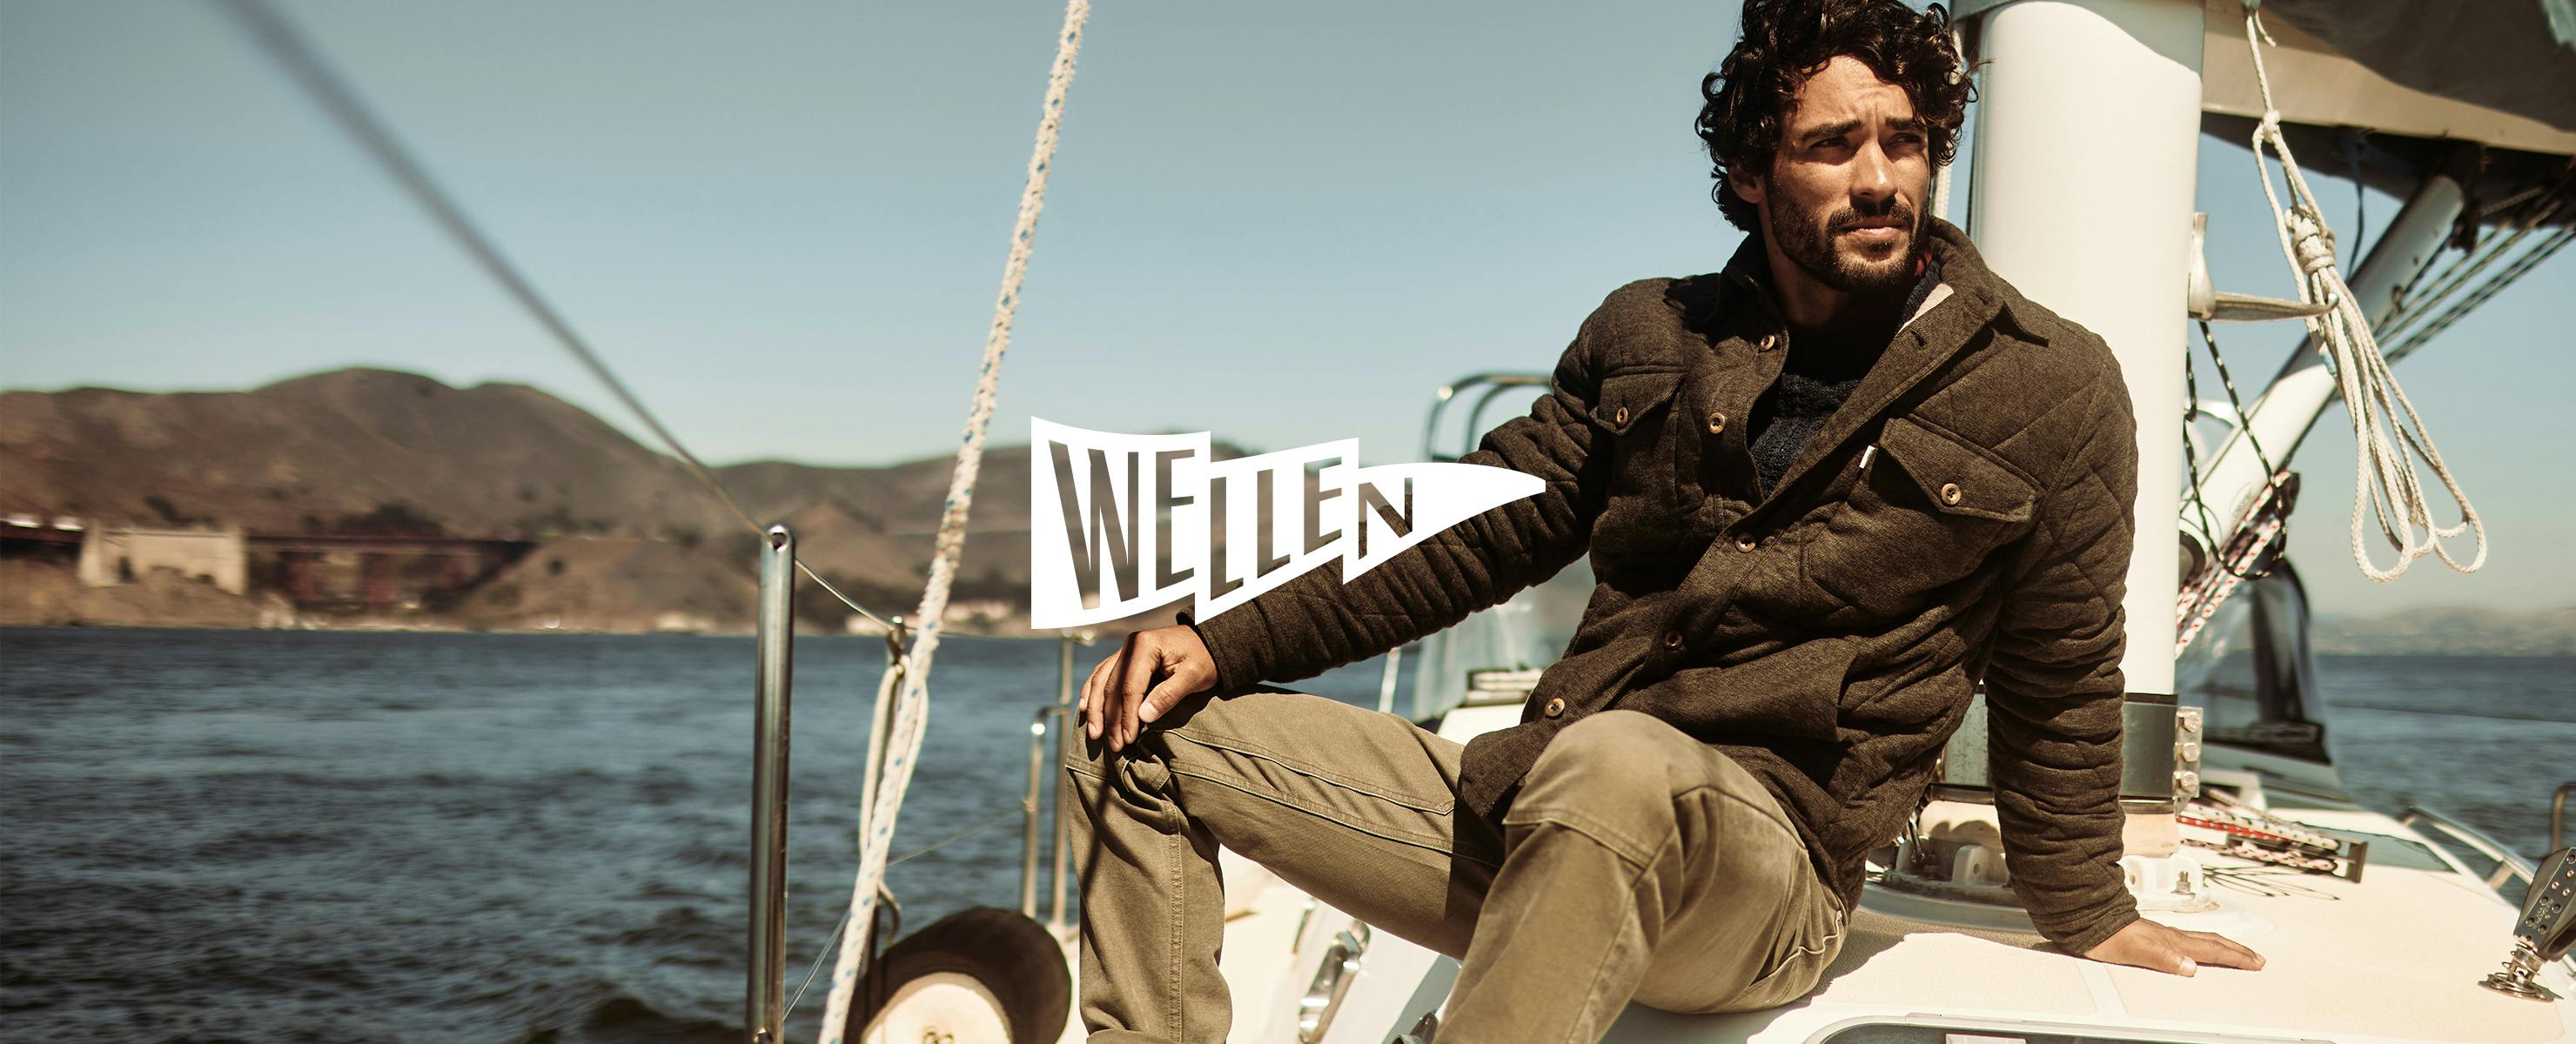 Wellen - Man sitting on boat wearing a jacket